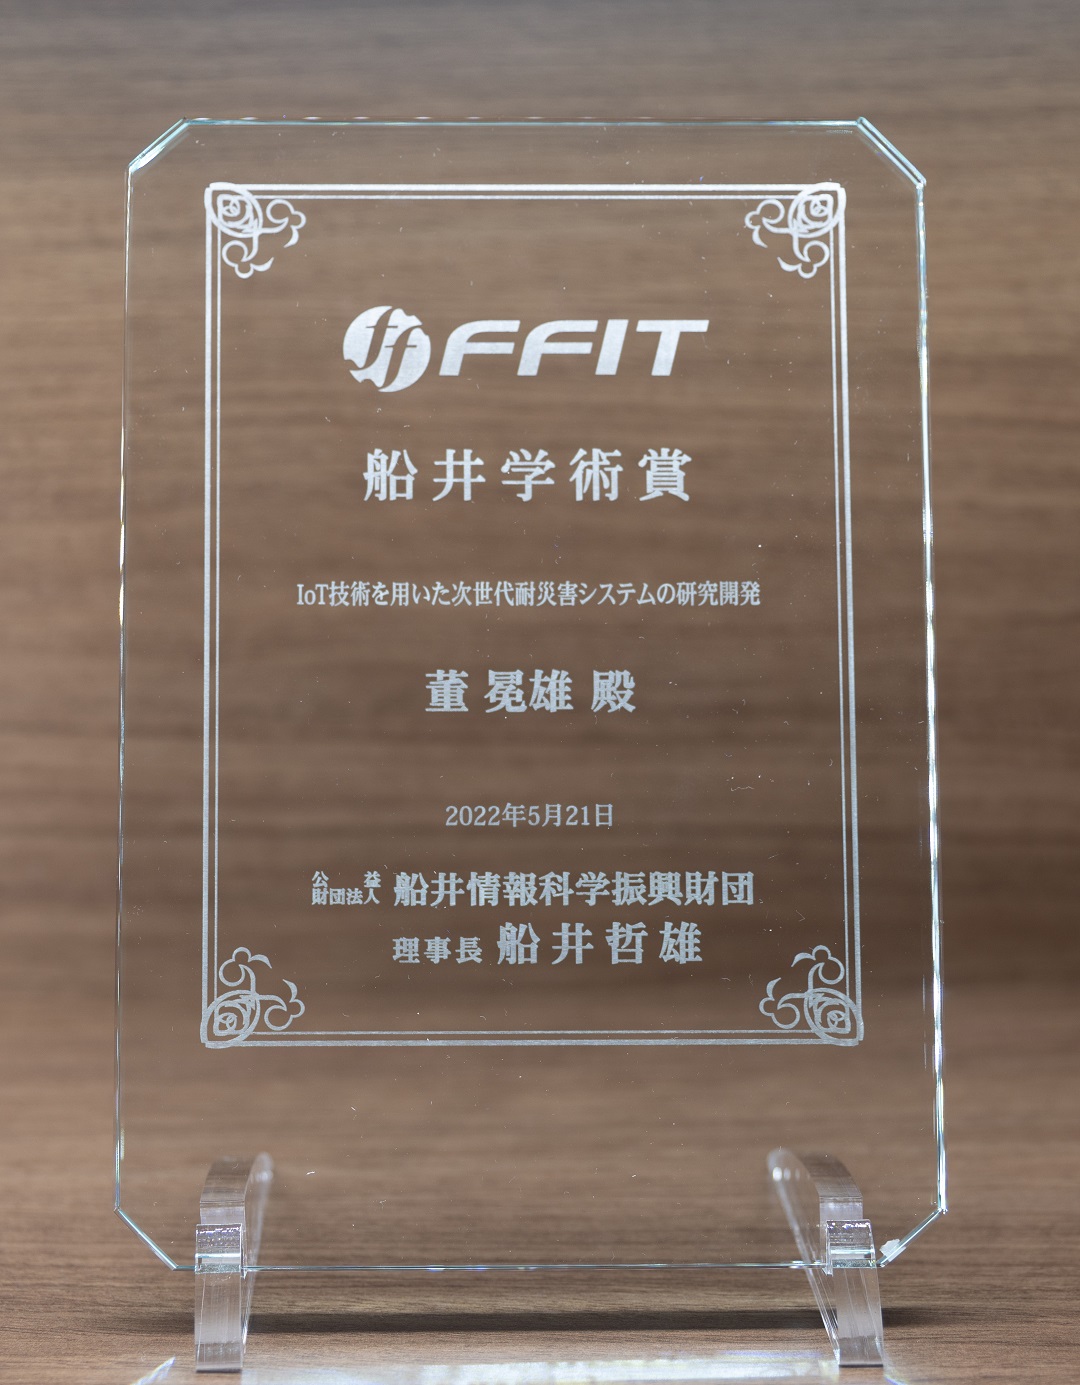 Funai Research Award 2021